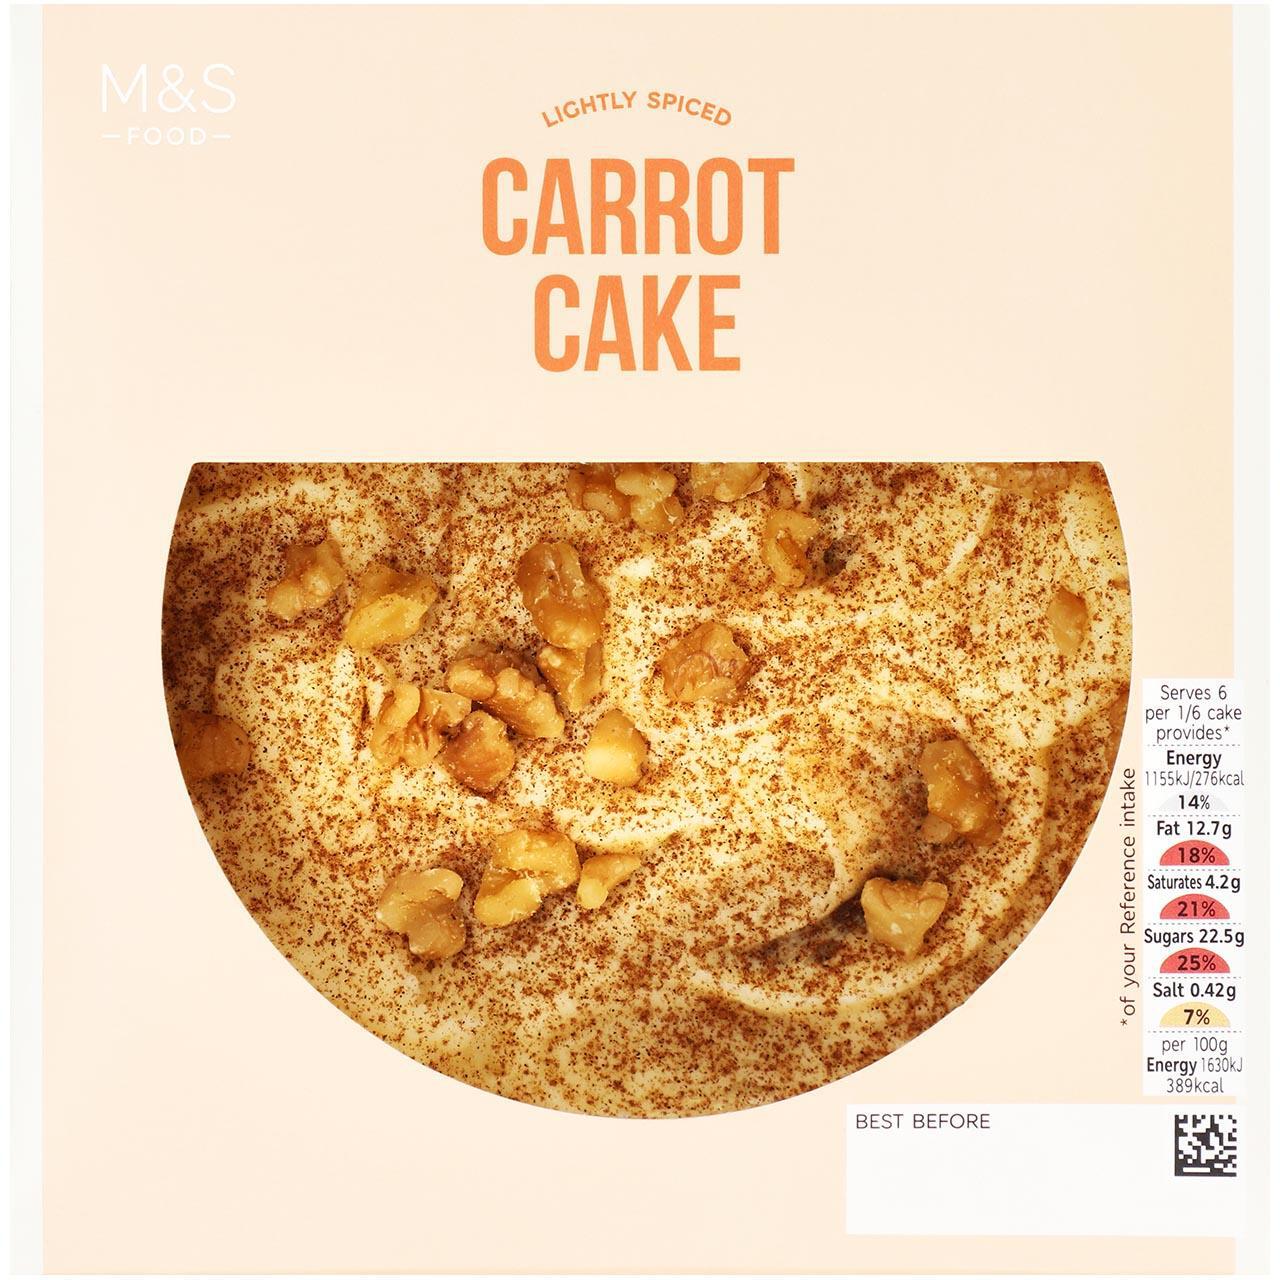 M&S Lightly Spiced Carrot Cake 410g